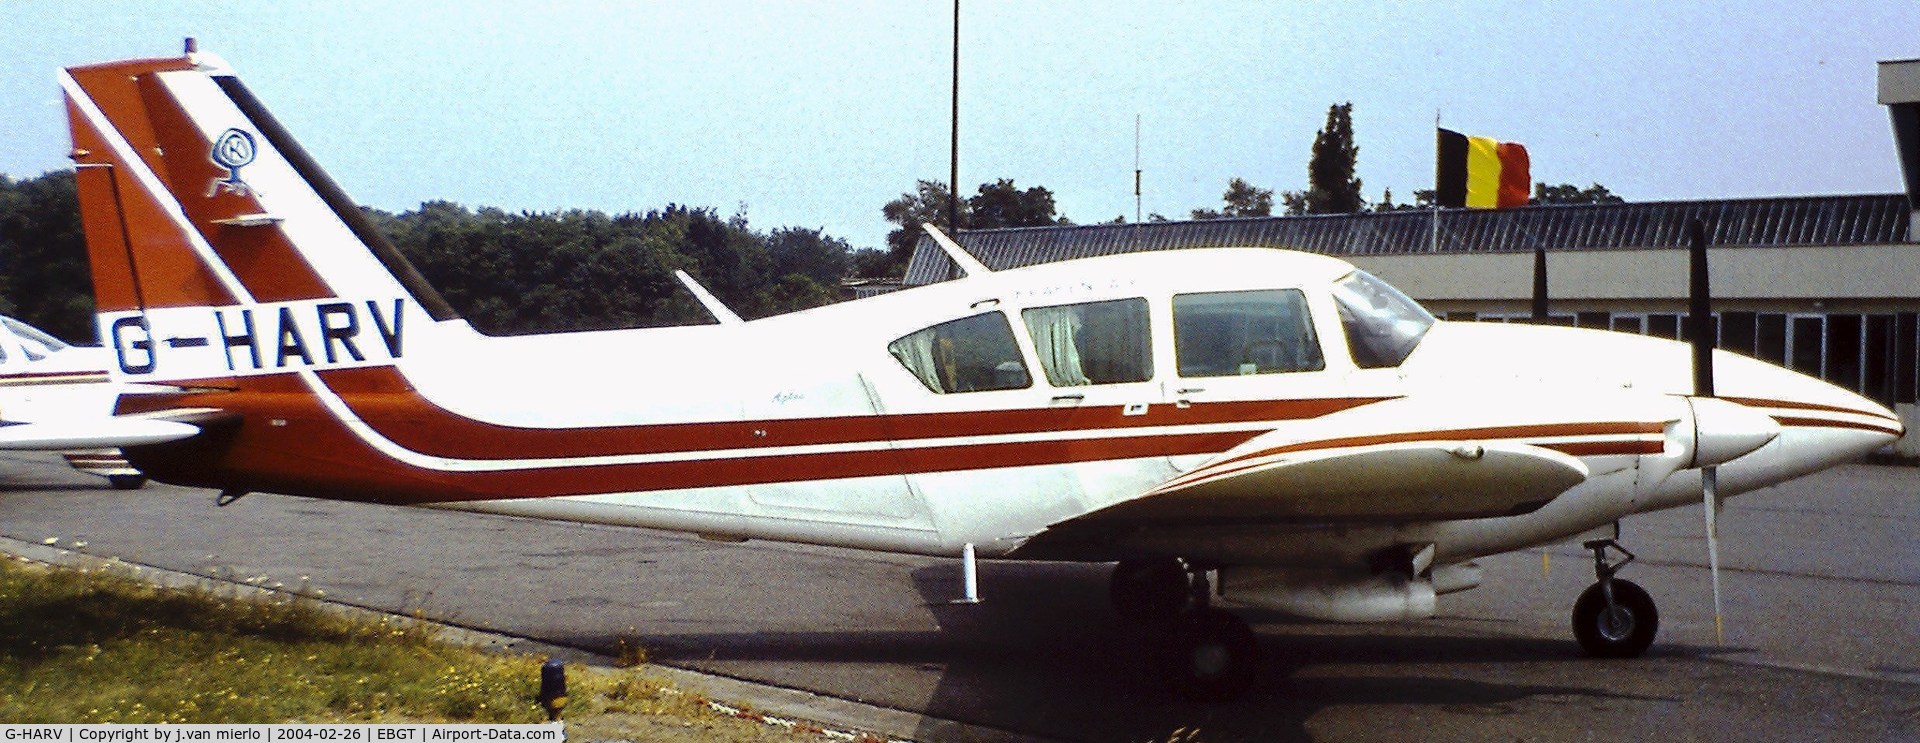 G-HARV, 1976 Piper PA-23-250 Aztec C/N 27-7754002, Ghent, Belgium